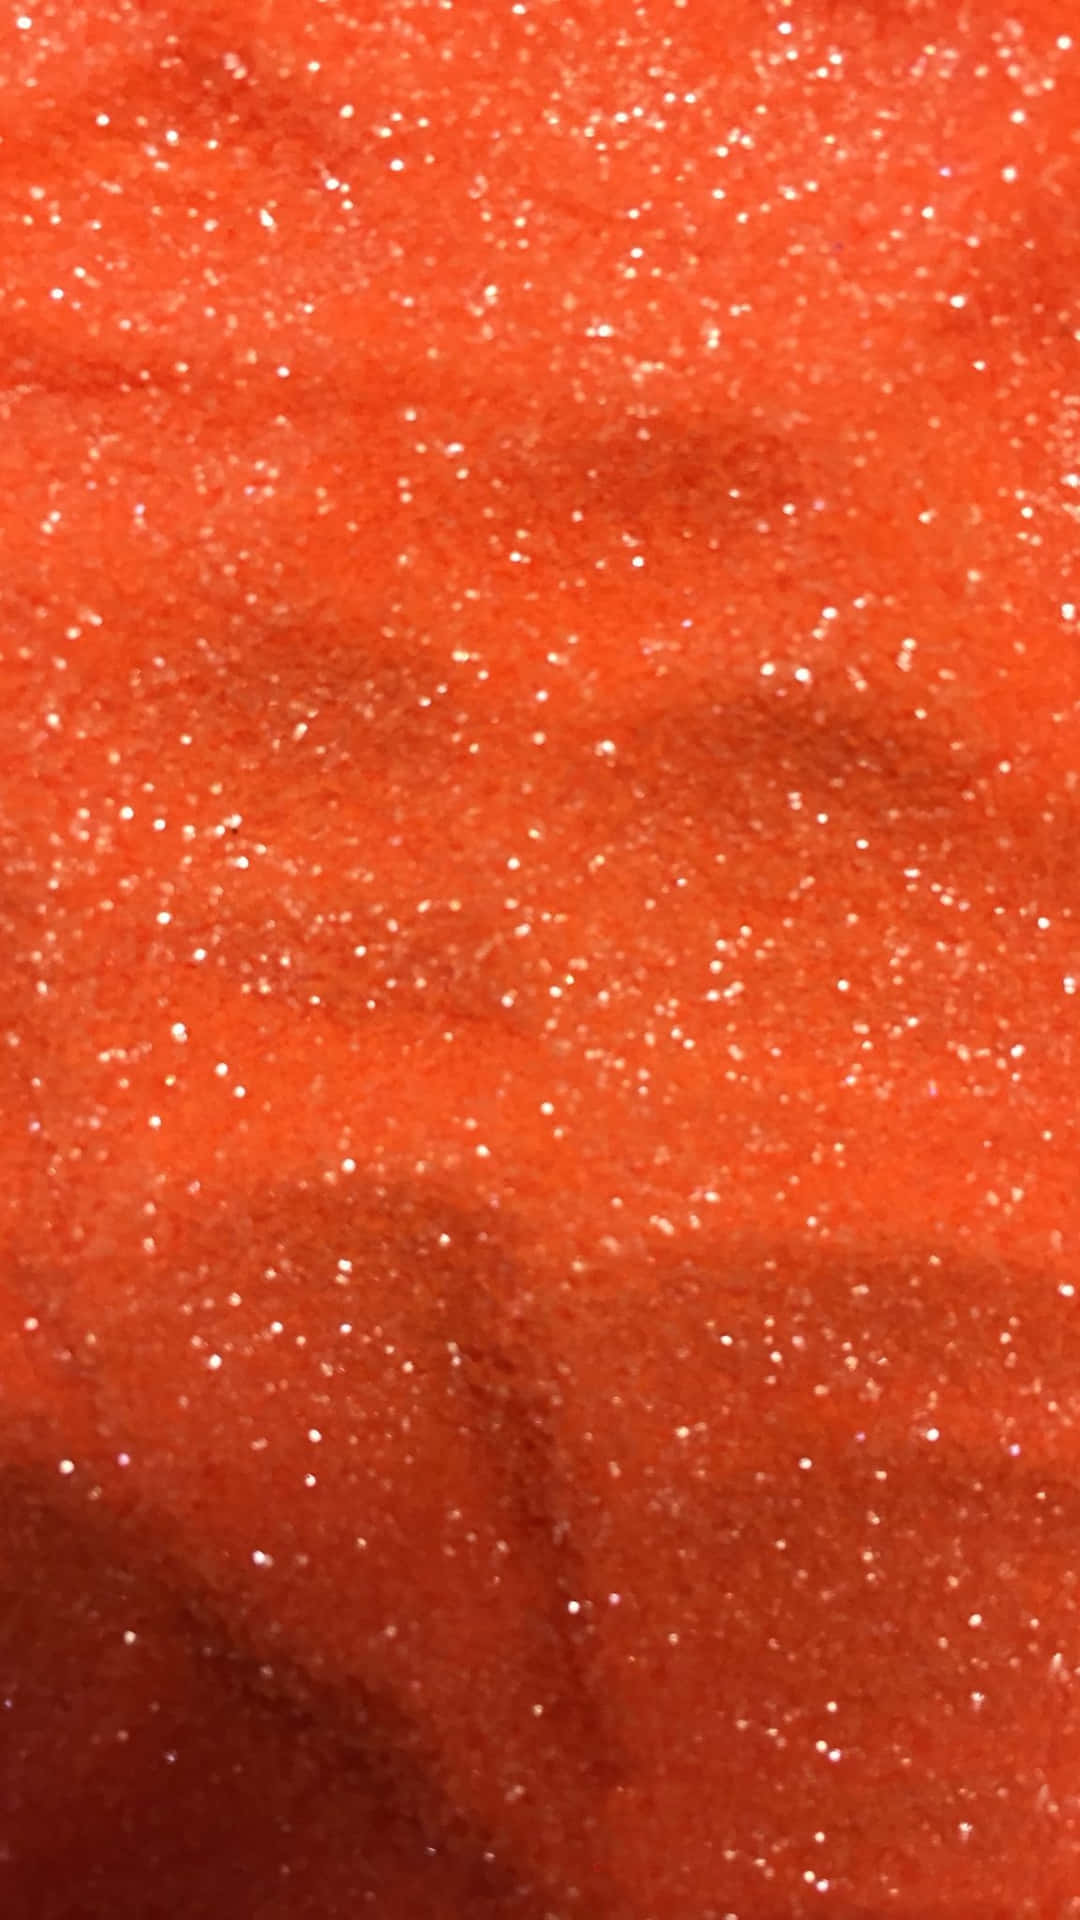 Shine bright with Orange Glitter Wallpaper